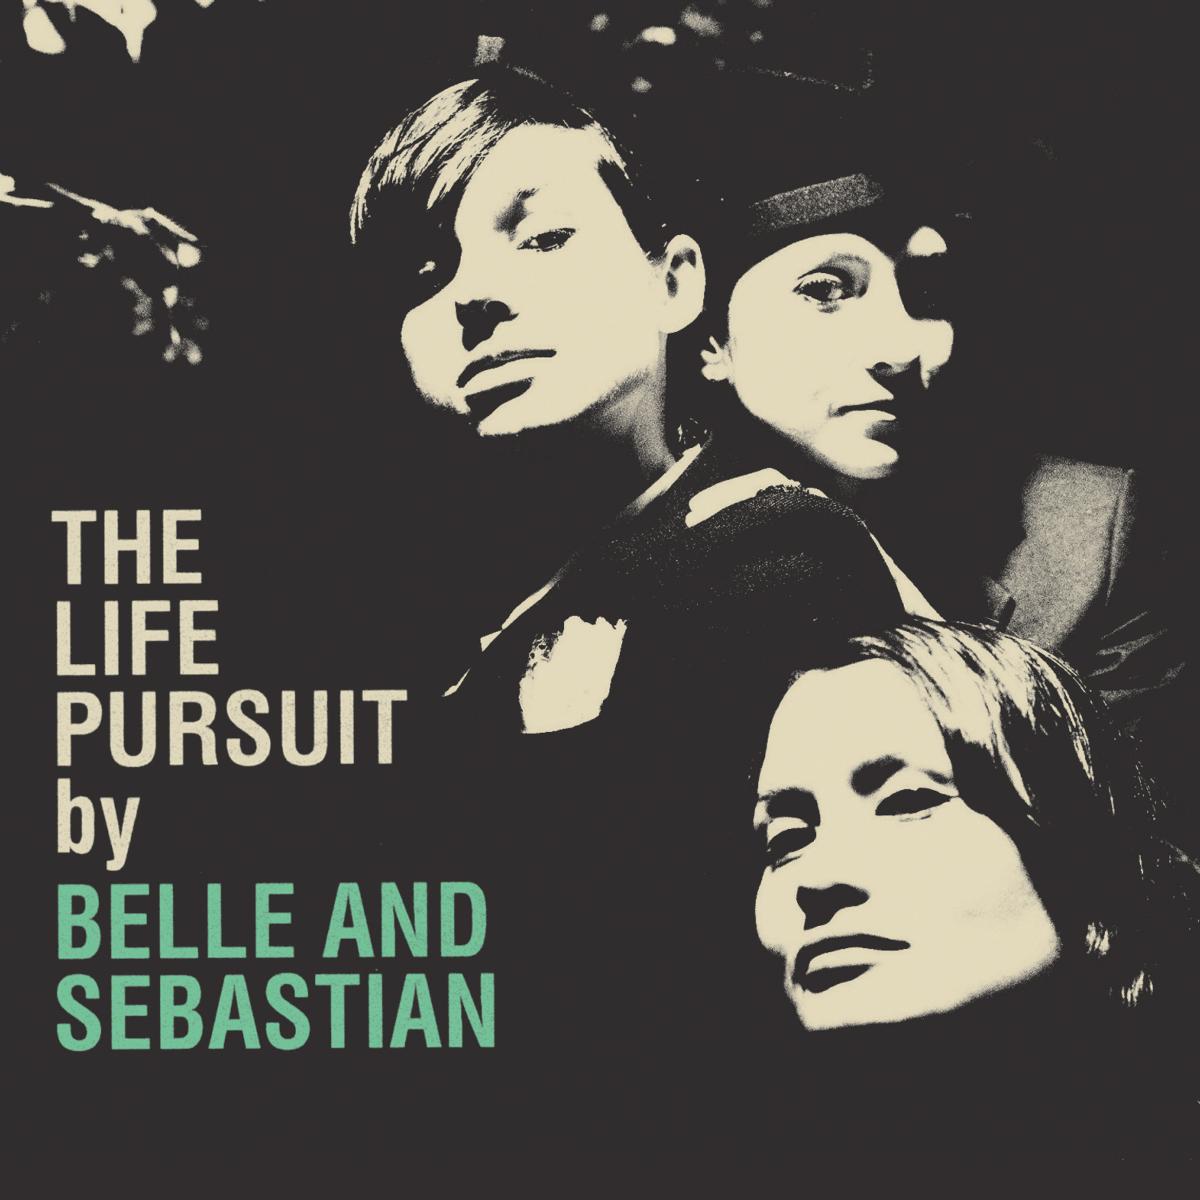 Belle & Sebastian - Life Pursuit (Digital Download Code)